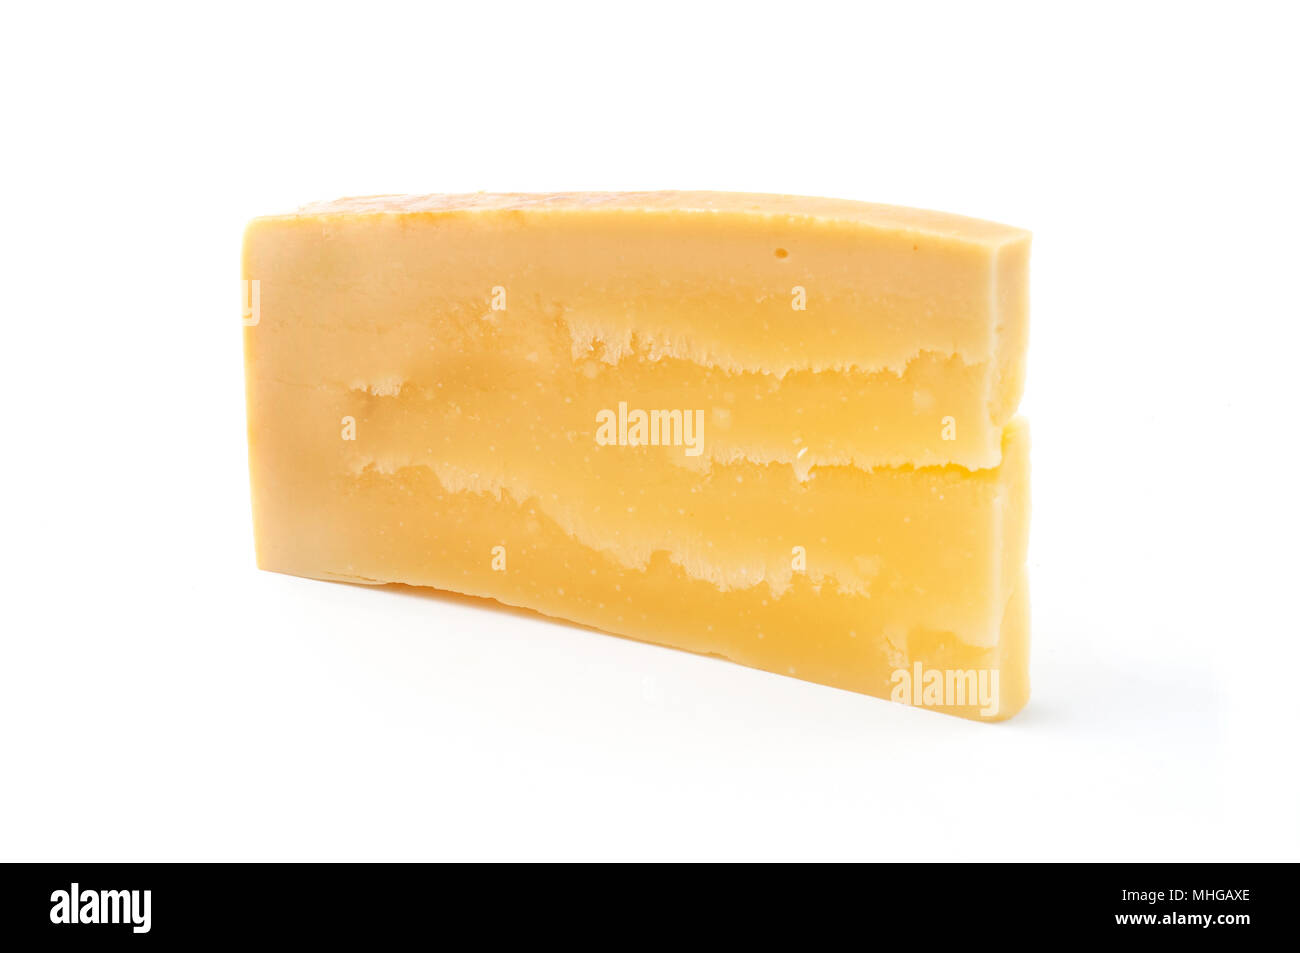 Pezzo di formaggio Sbrinz con tagliaformaggio, formaggio svizzero,  formaggio duro, Svizzera Foto stock - Alamy